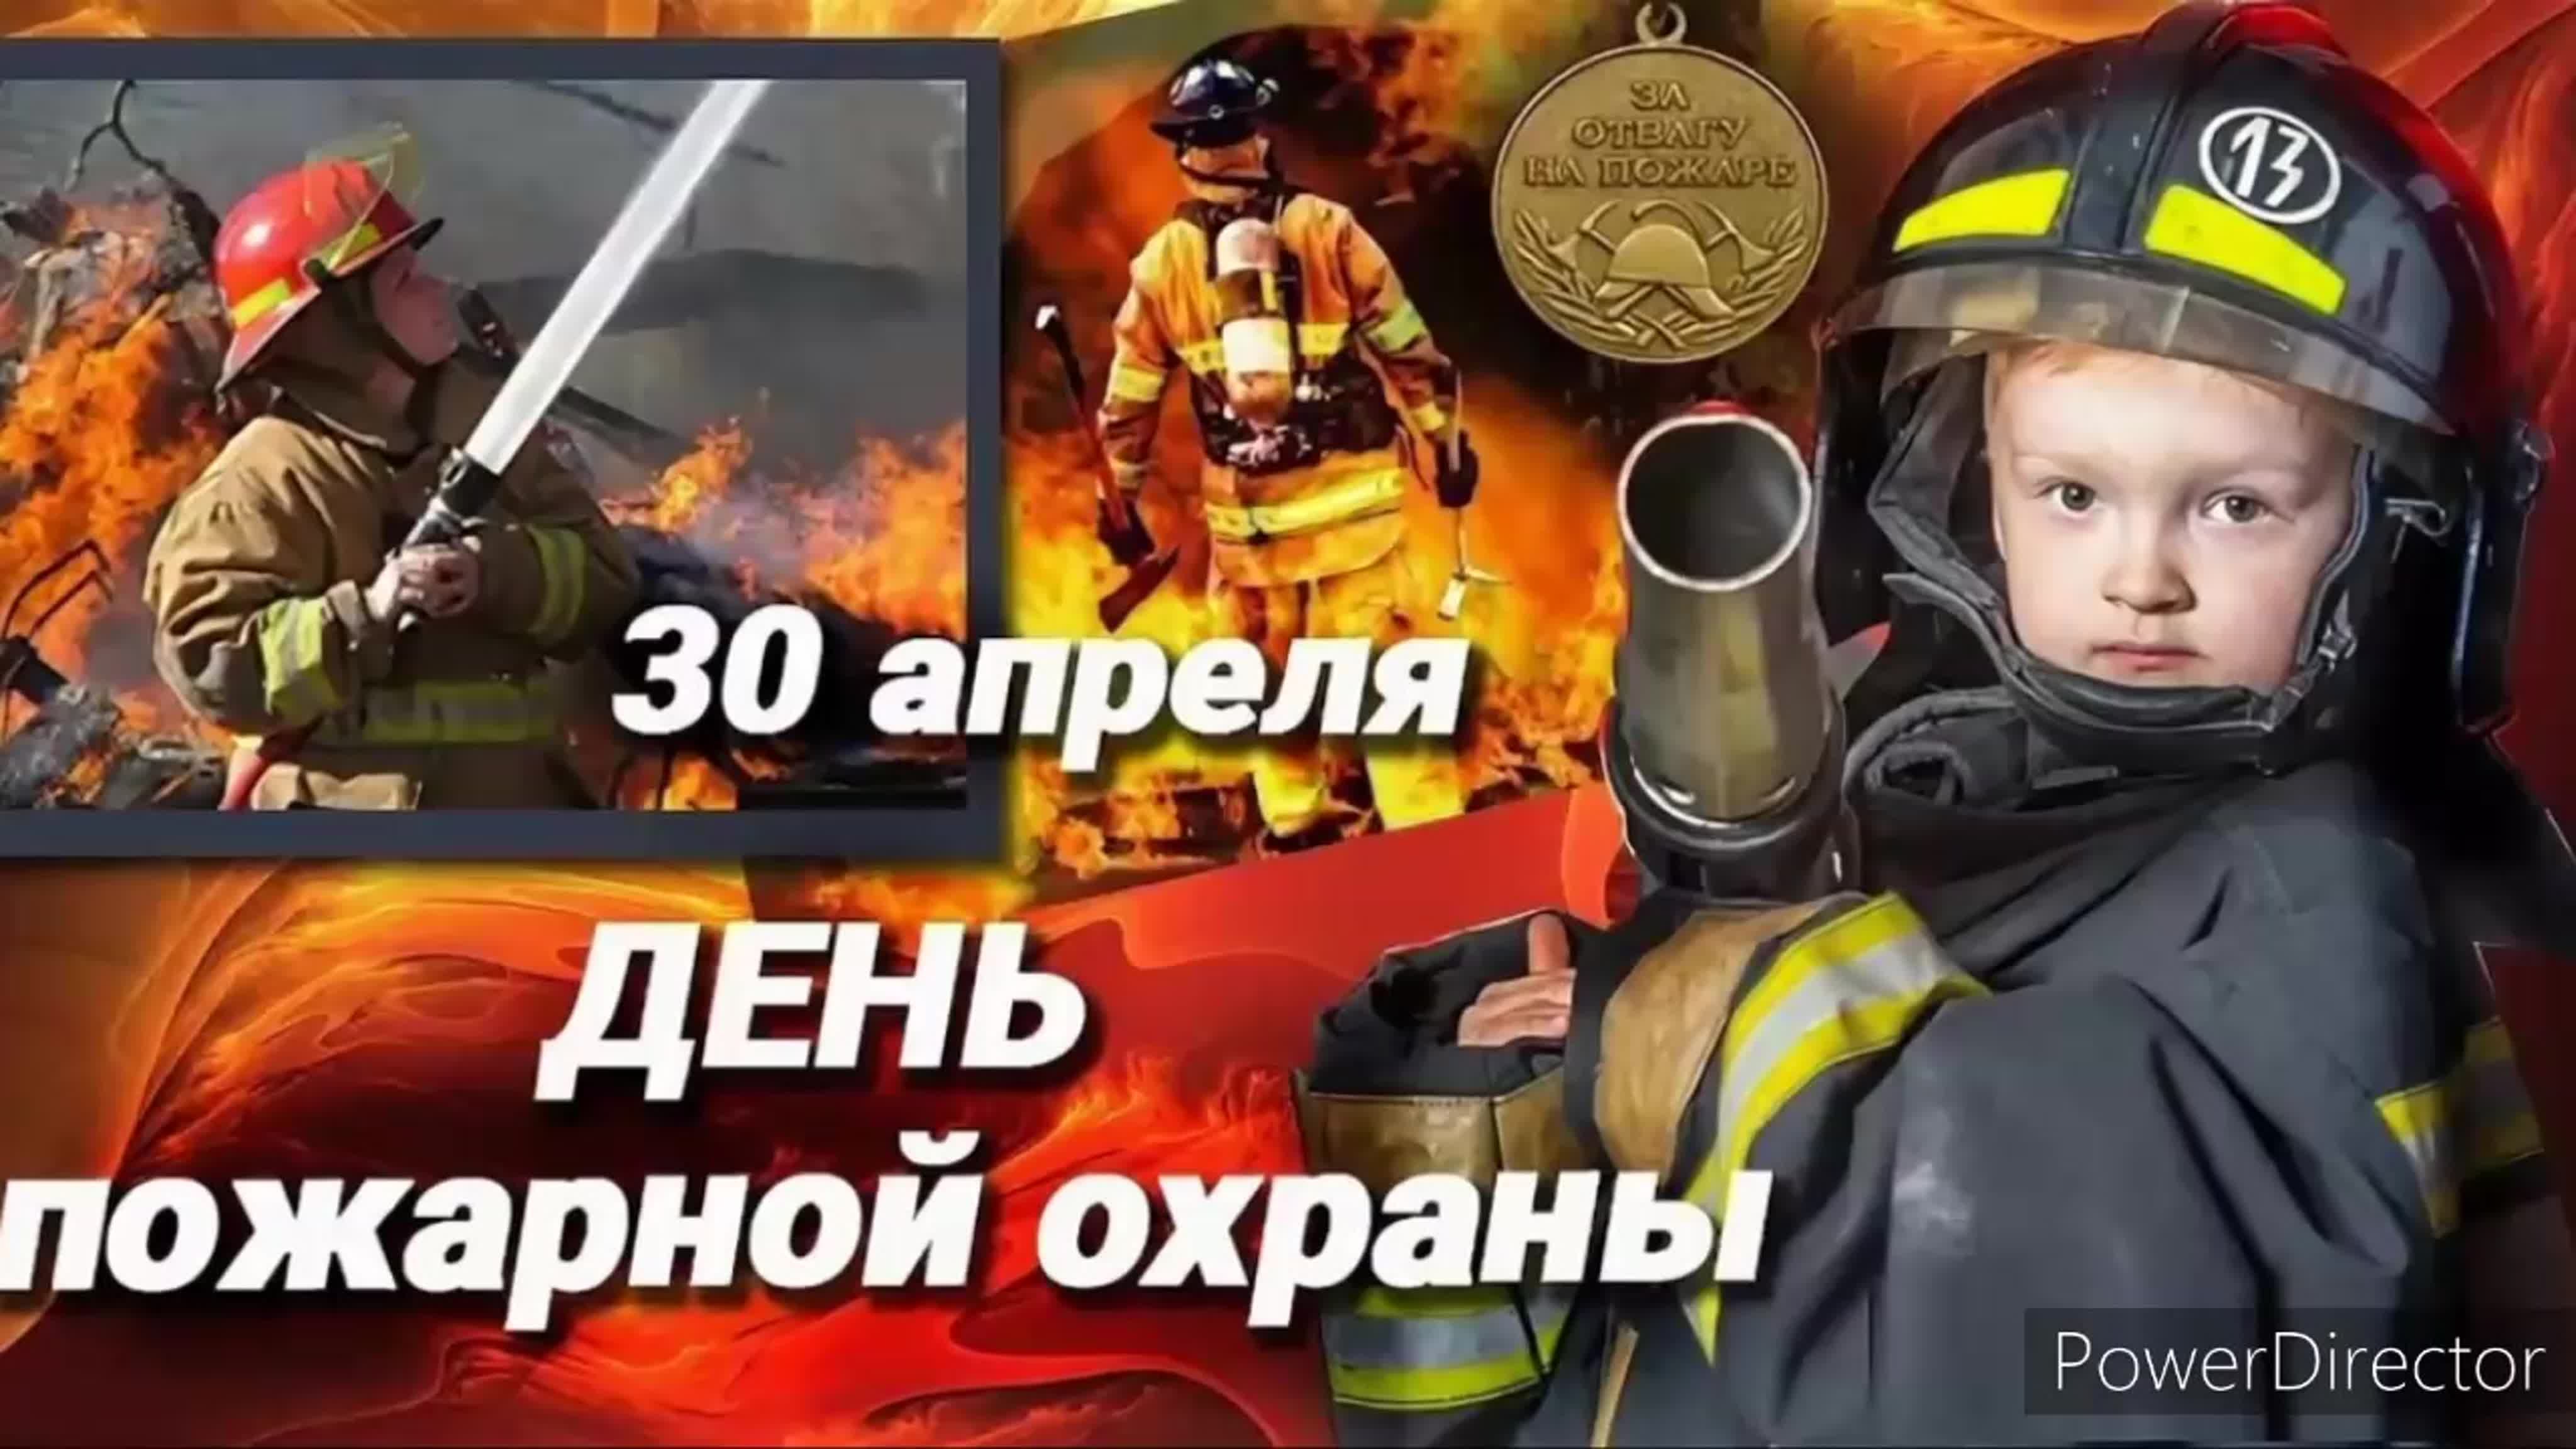 30 апреля 24 года праздник. С днем пожарной охраны. 30 Апреля день пожарной охраны России. С днем пожарной охраны поздравление. С днем пожарной охраны 30 апреля.